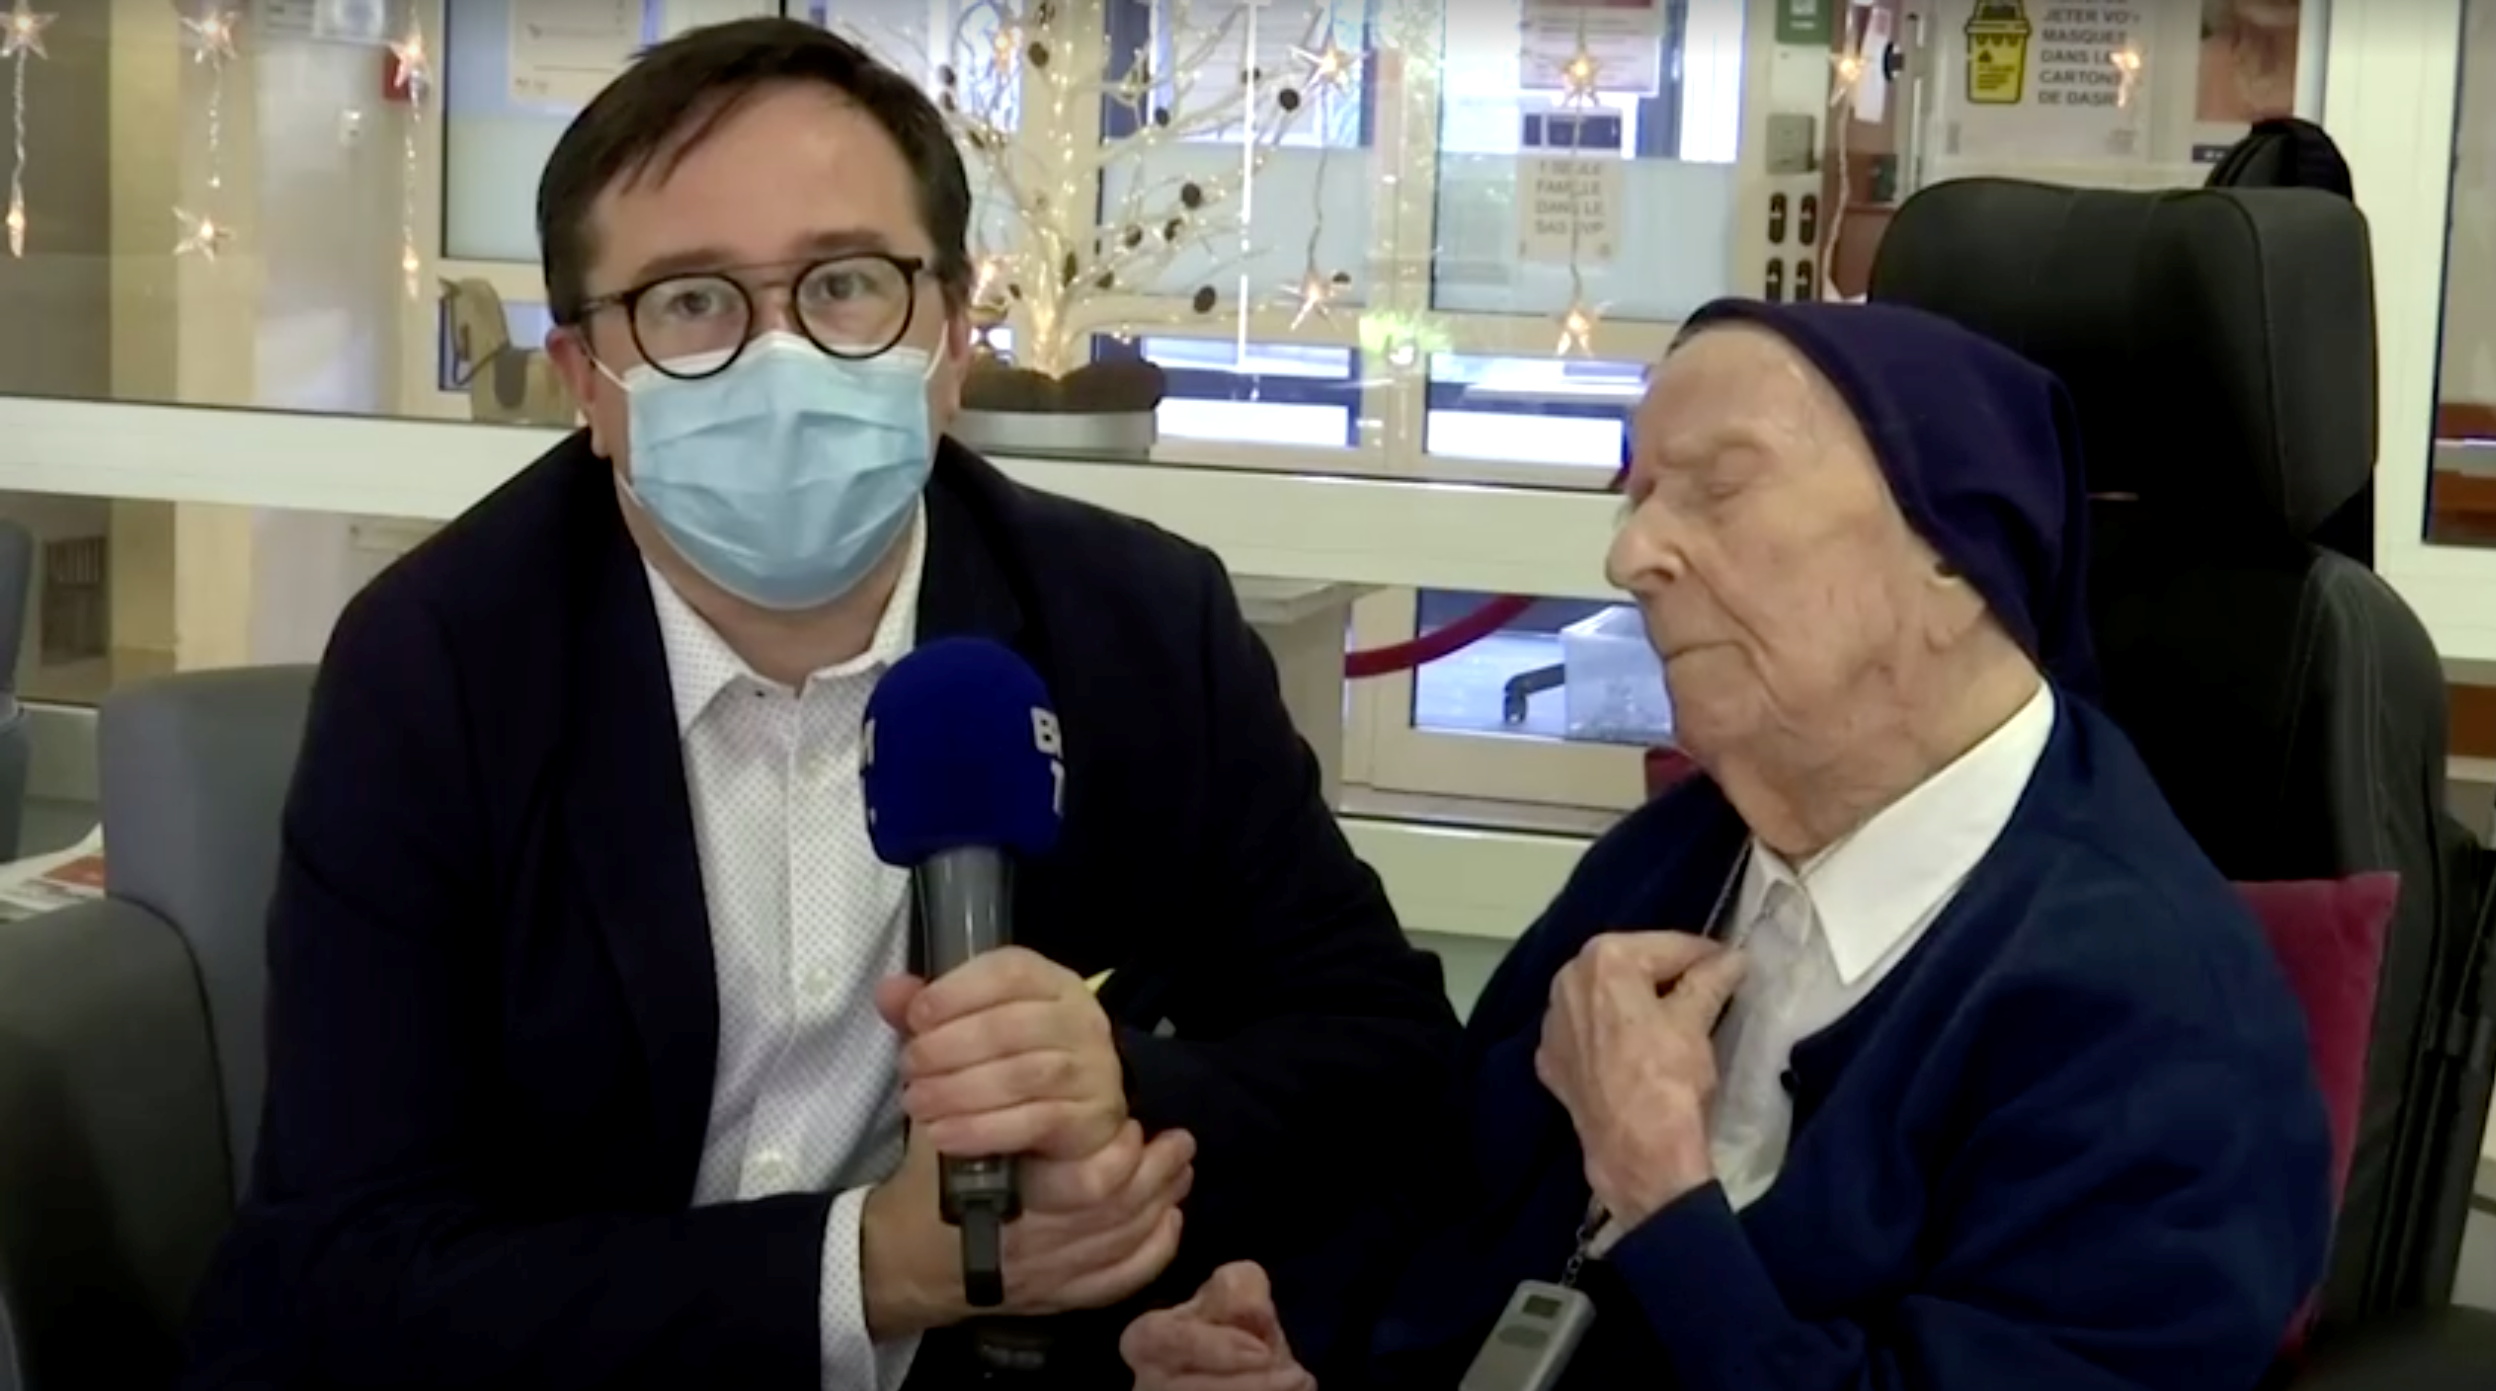 La persona más longeva de Europa, la monja Lucile Randon, también conocida como Hermana Andre, que sobrevivió a la enfermedad del coronavirus (COVID-19), fue entrevistada en Toulon, Francia, el 9 de febrero de 2021. Reuters TV
. BFMTV/Reuters TV via REUTERS 